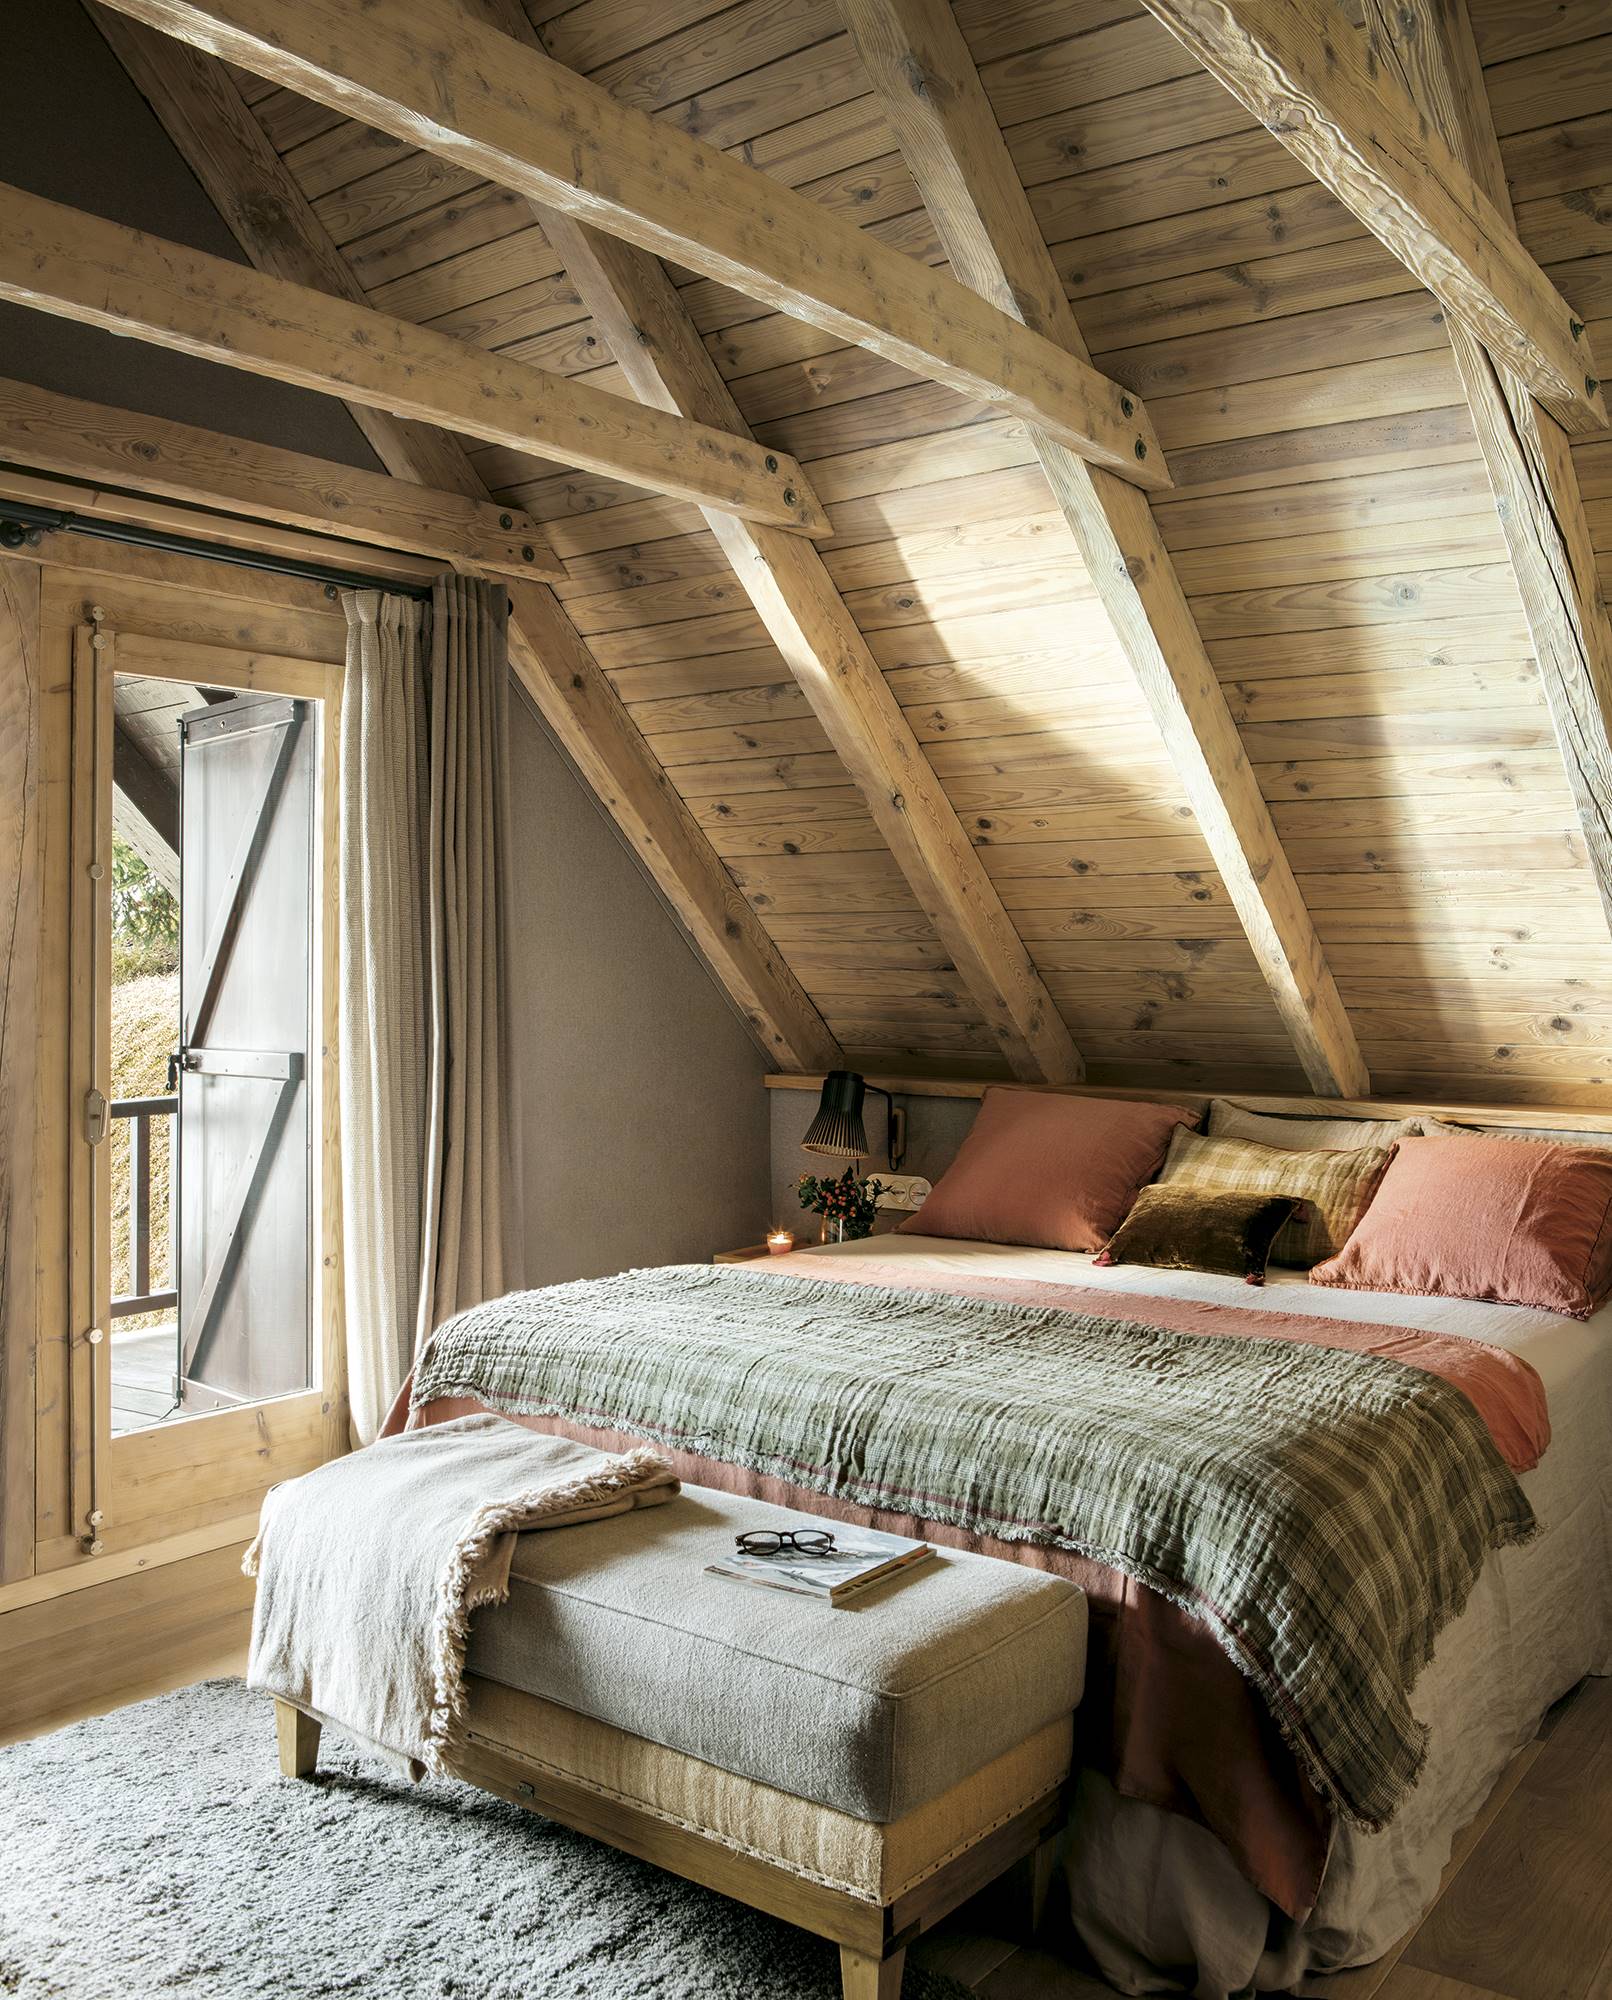 Dormitorio rústico abuhardillado con paredes y techos de madera y banco a los pies de la cama.  